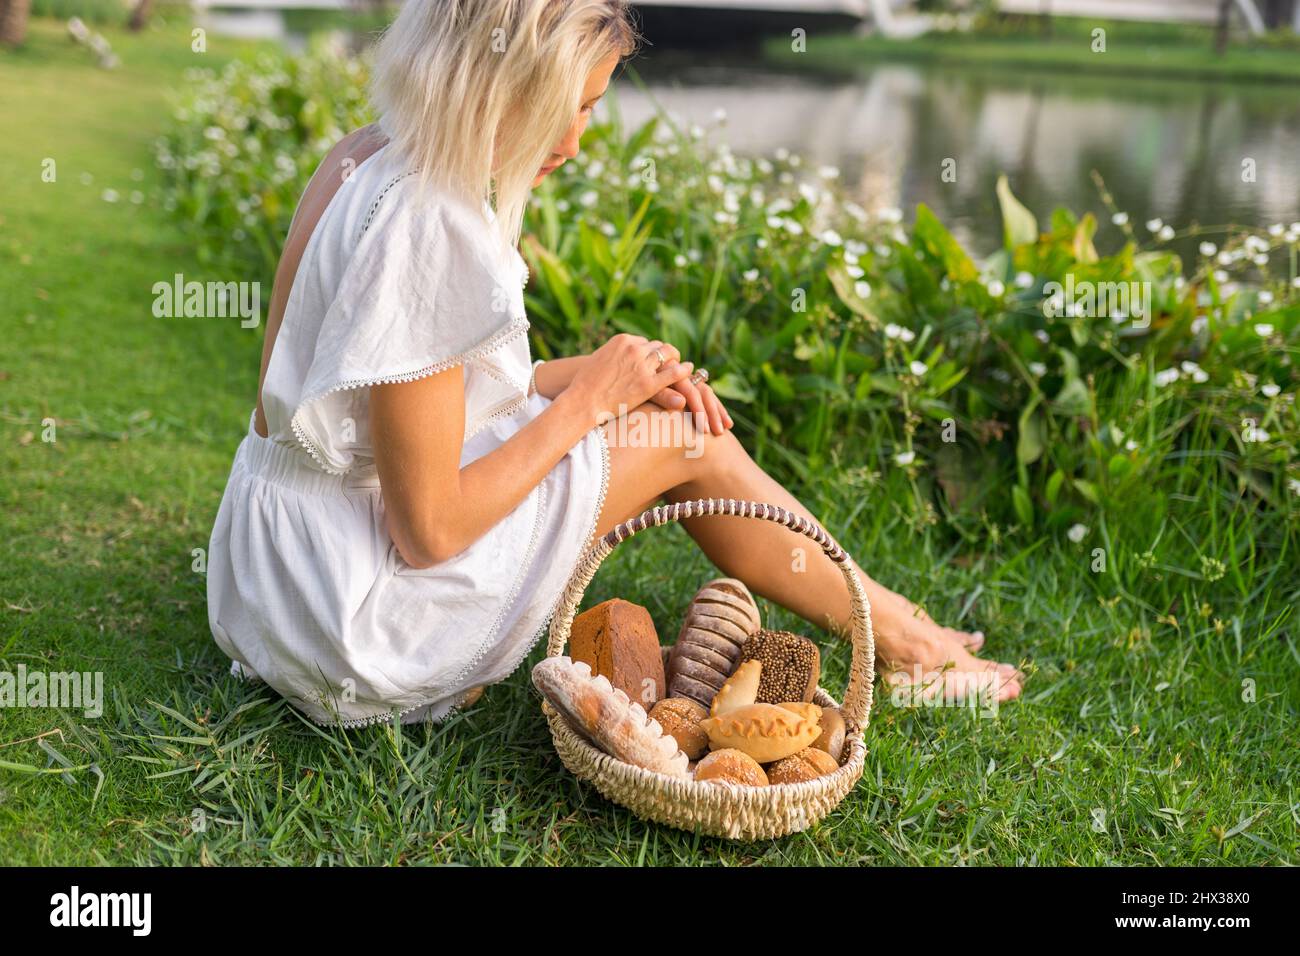 Giovane donna in vestito bianco seduta sull'erba con cestino con assorti di pane casereccio marrone e bianco. Foto di alta qualità Foto Stock